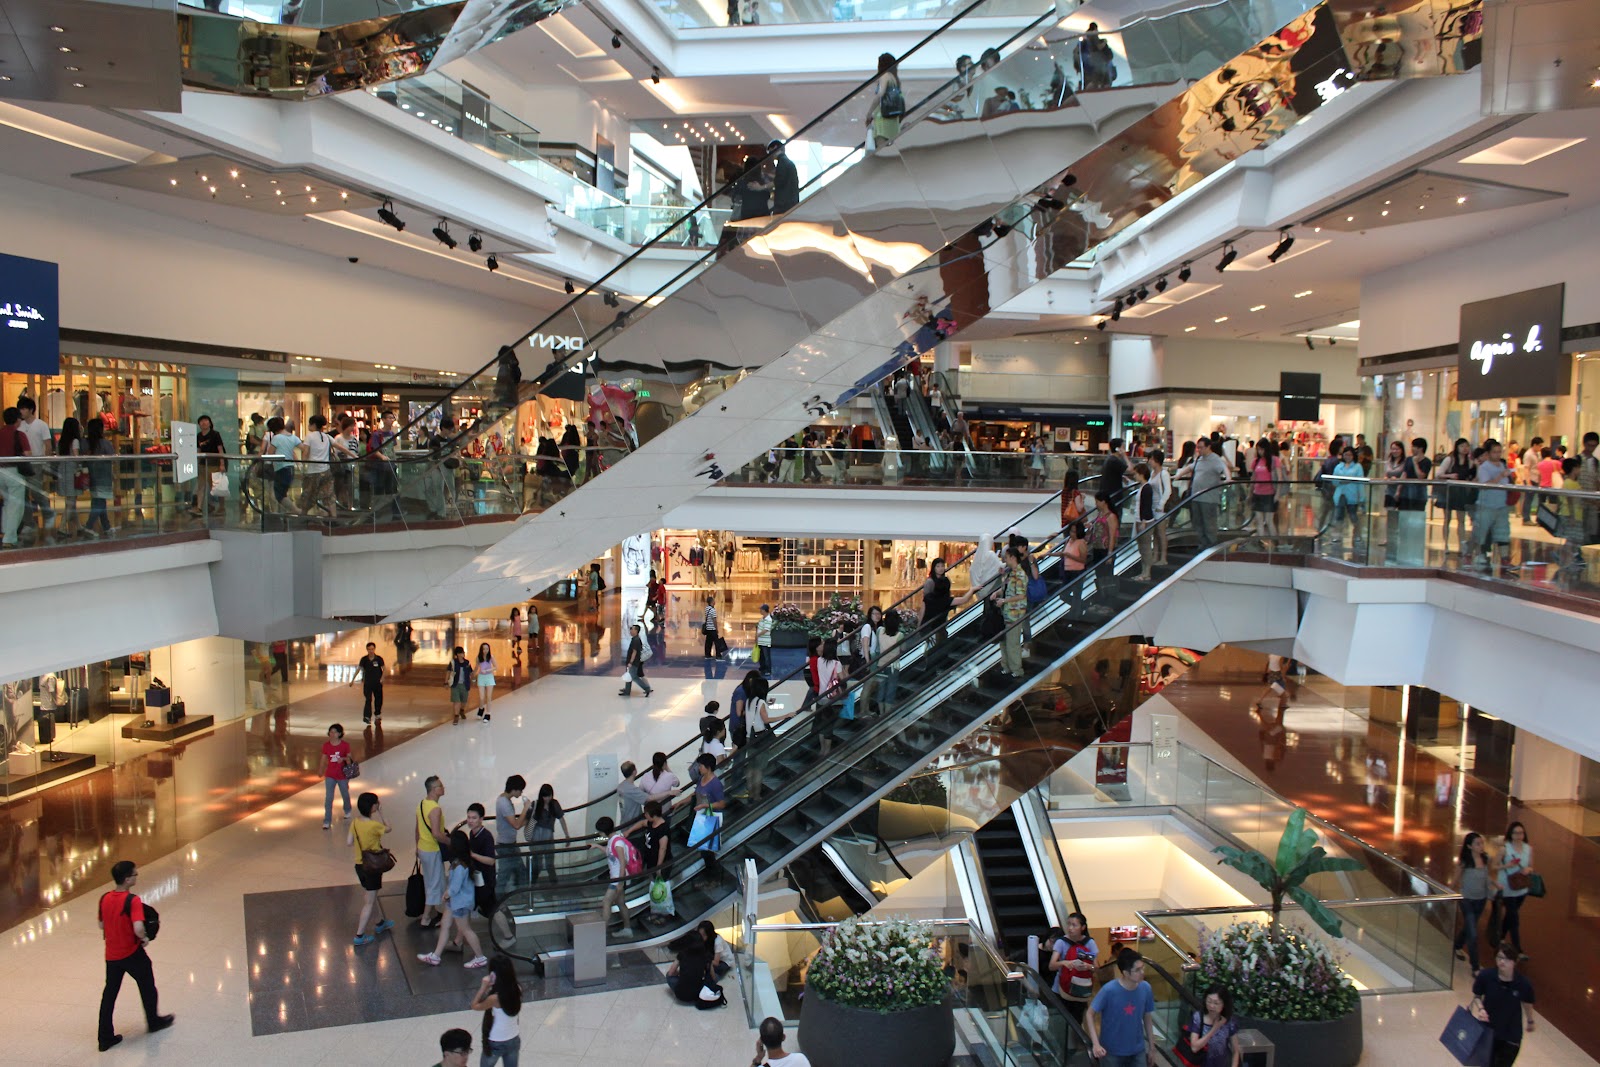 Shopping mall 2. Люди в торговом центре. Много людей в торговом центре. Торговый центр внутри с людьми. Посещение торговых центров.